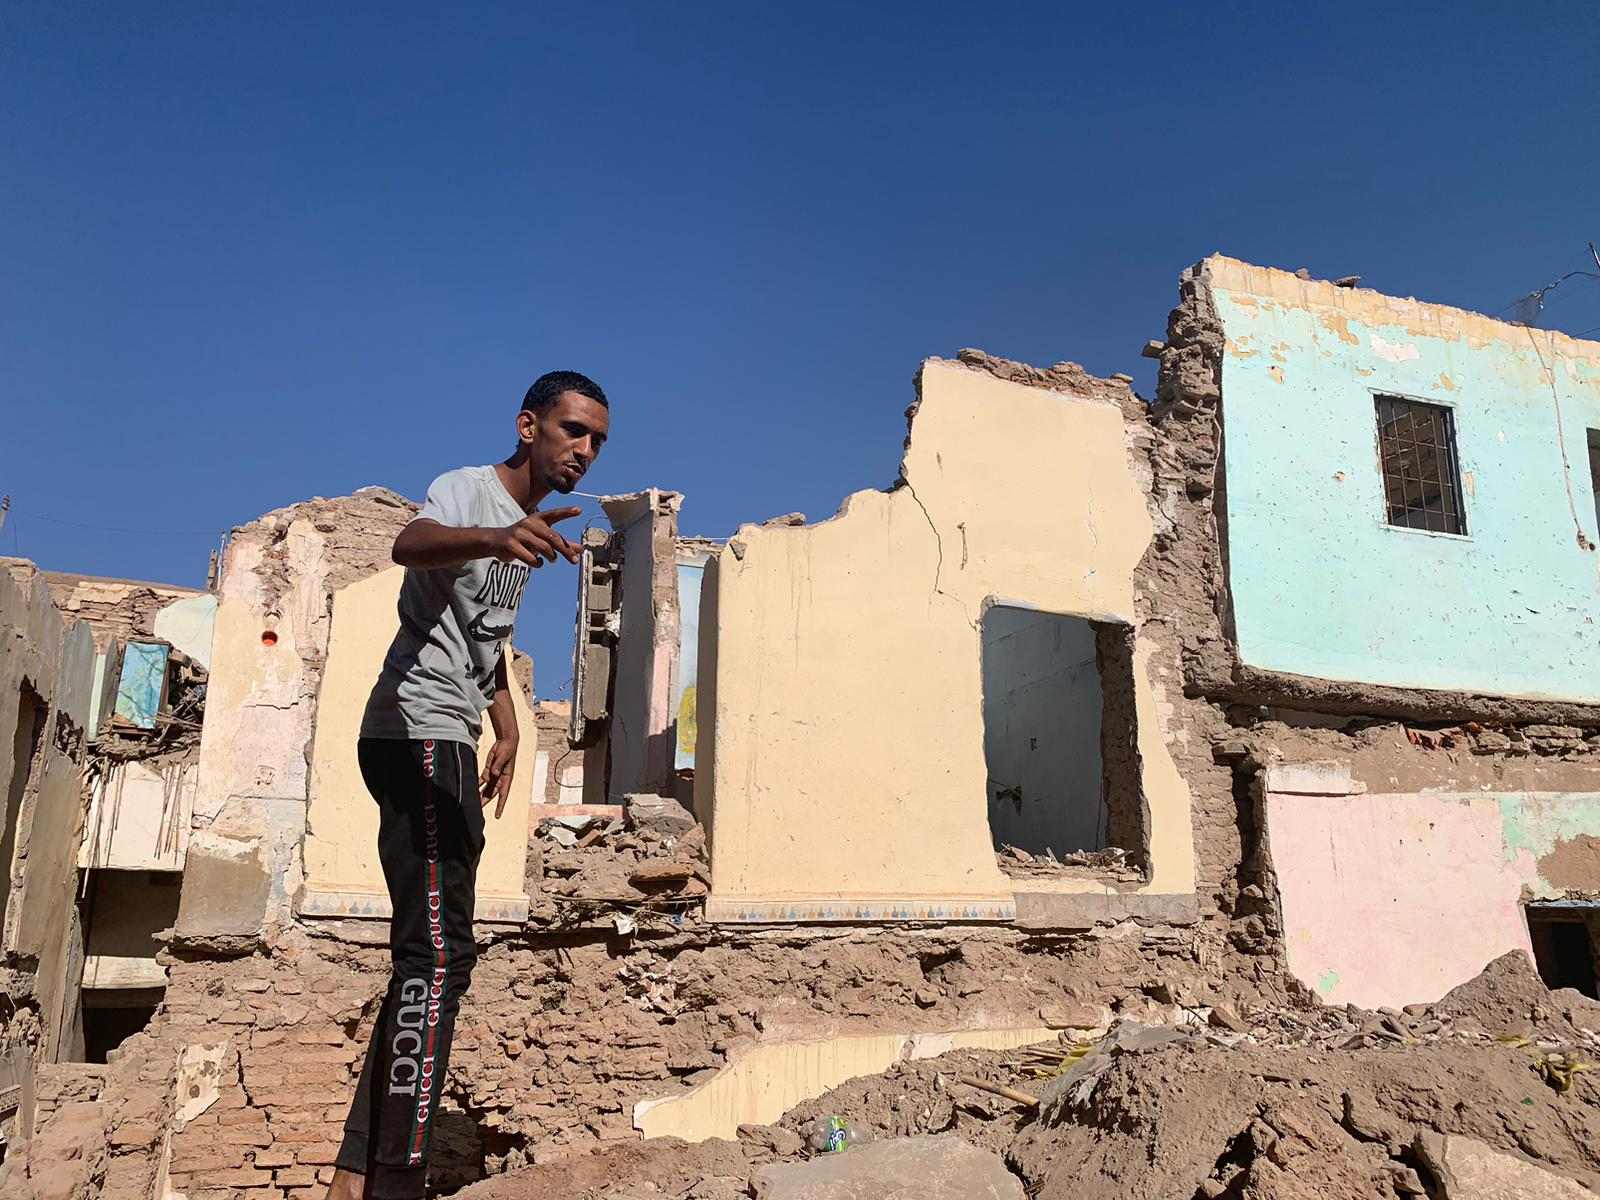 Tour del horror entre los escombros en Mellah, el barrio olvidado de Marrakech